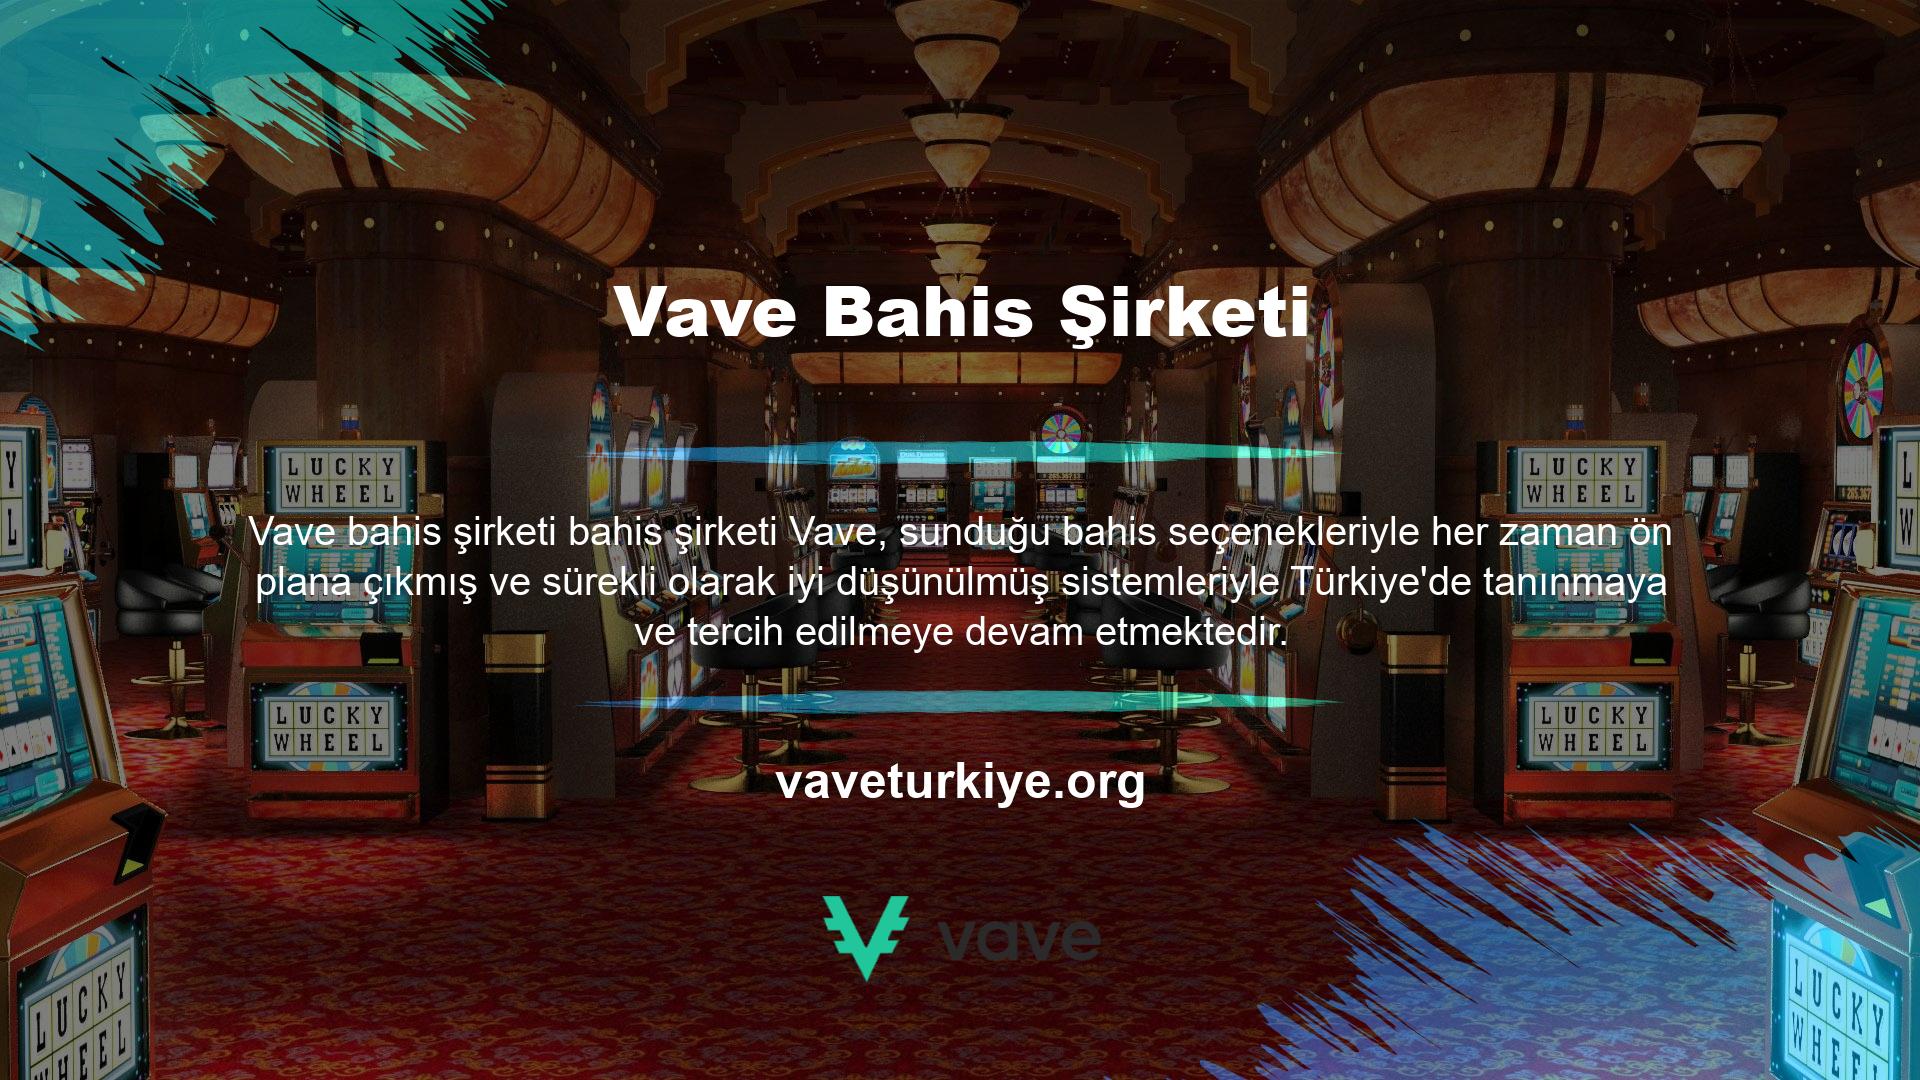 Türkiye'de düşük oranlarla oynamak istemeyenlerin ilk tercihi olan Vave bahis şirketi, birçok özel avantaj sunmaktadır